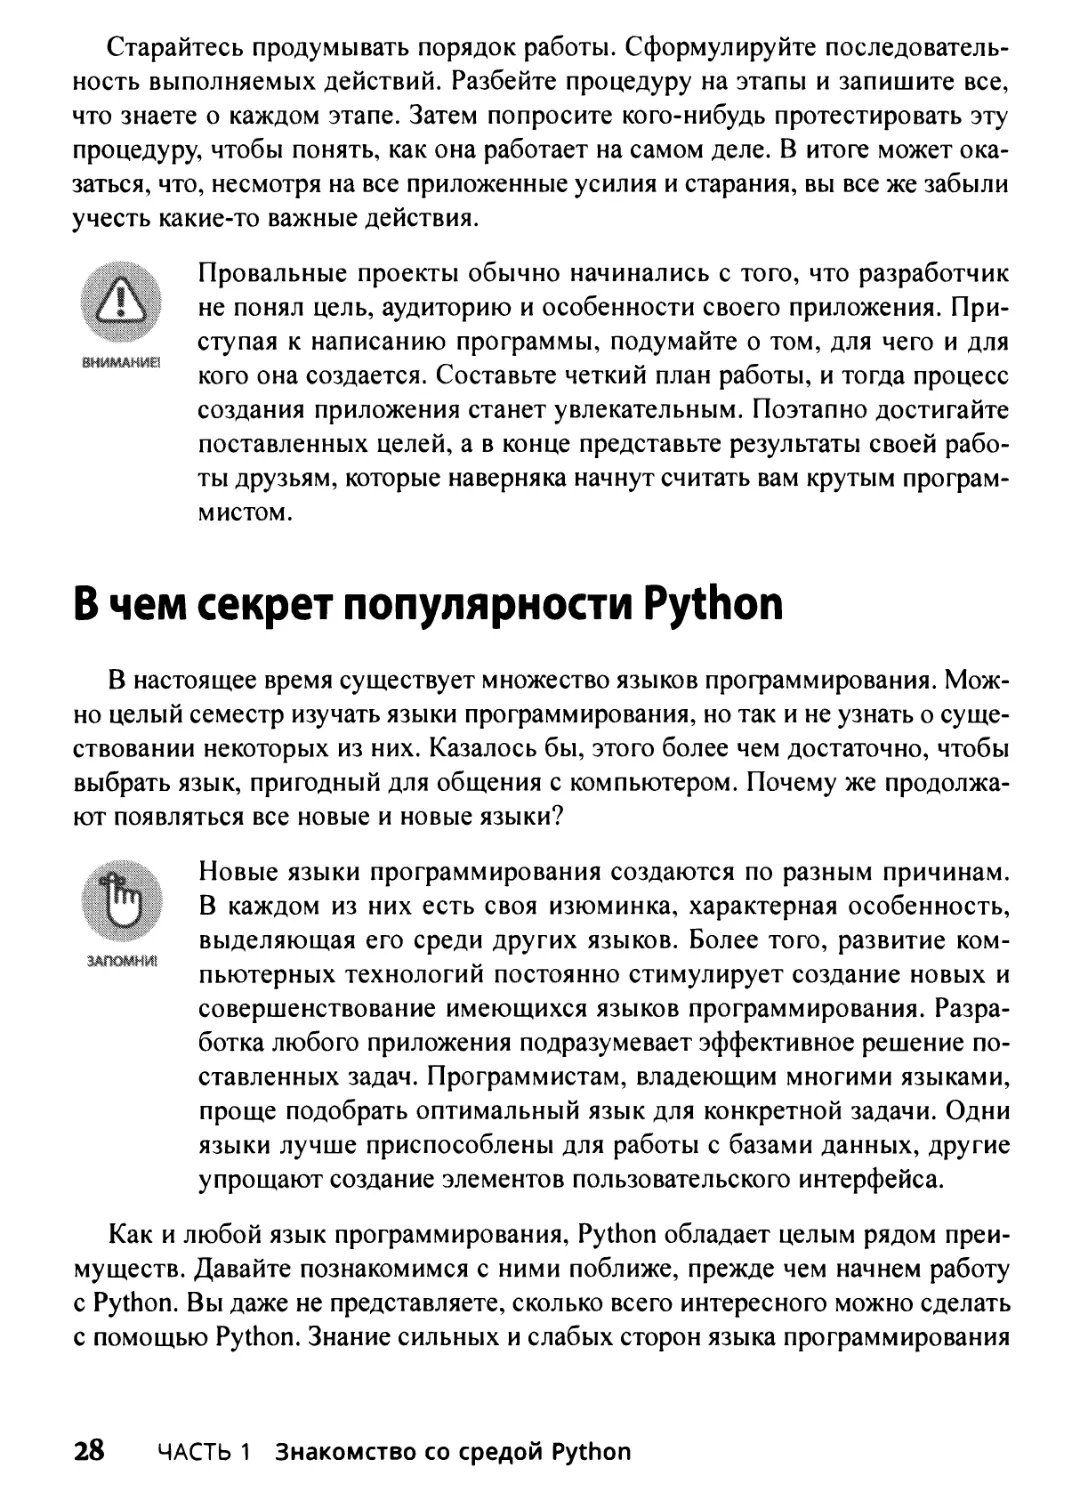 В чем секрет популярности Python